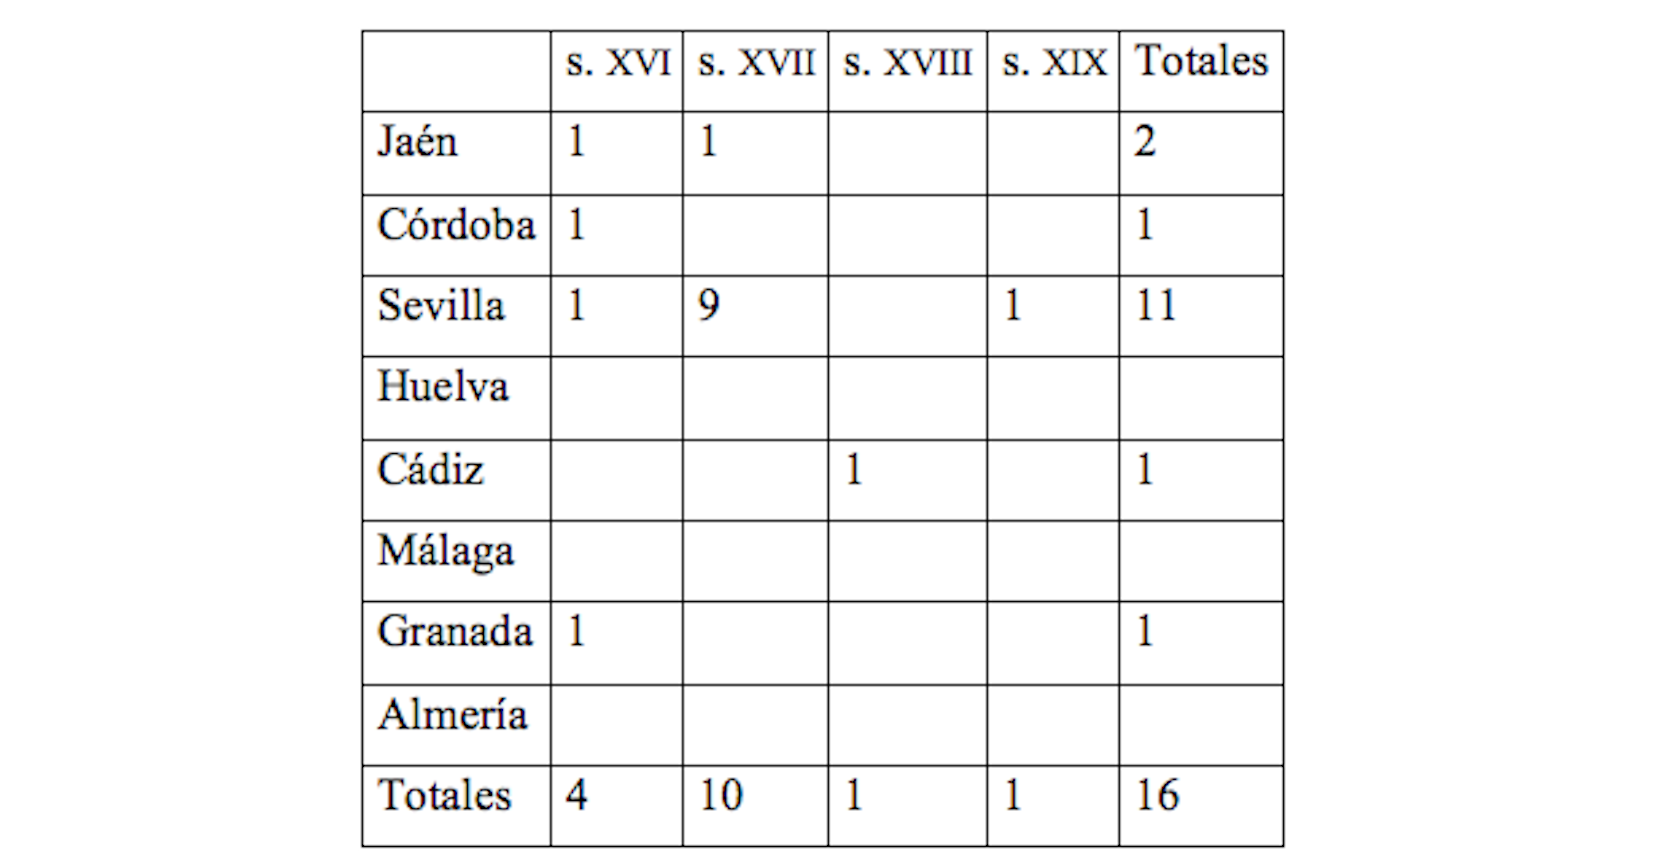 Resumen de documentos del cndhe para Andalucía (siglos xvi-xix) no coincidente con corde
